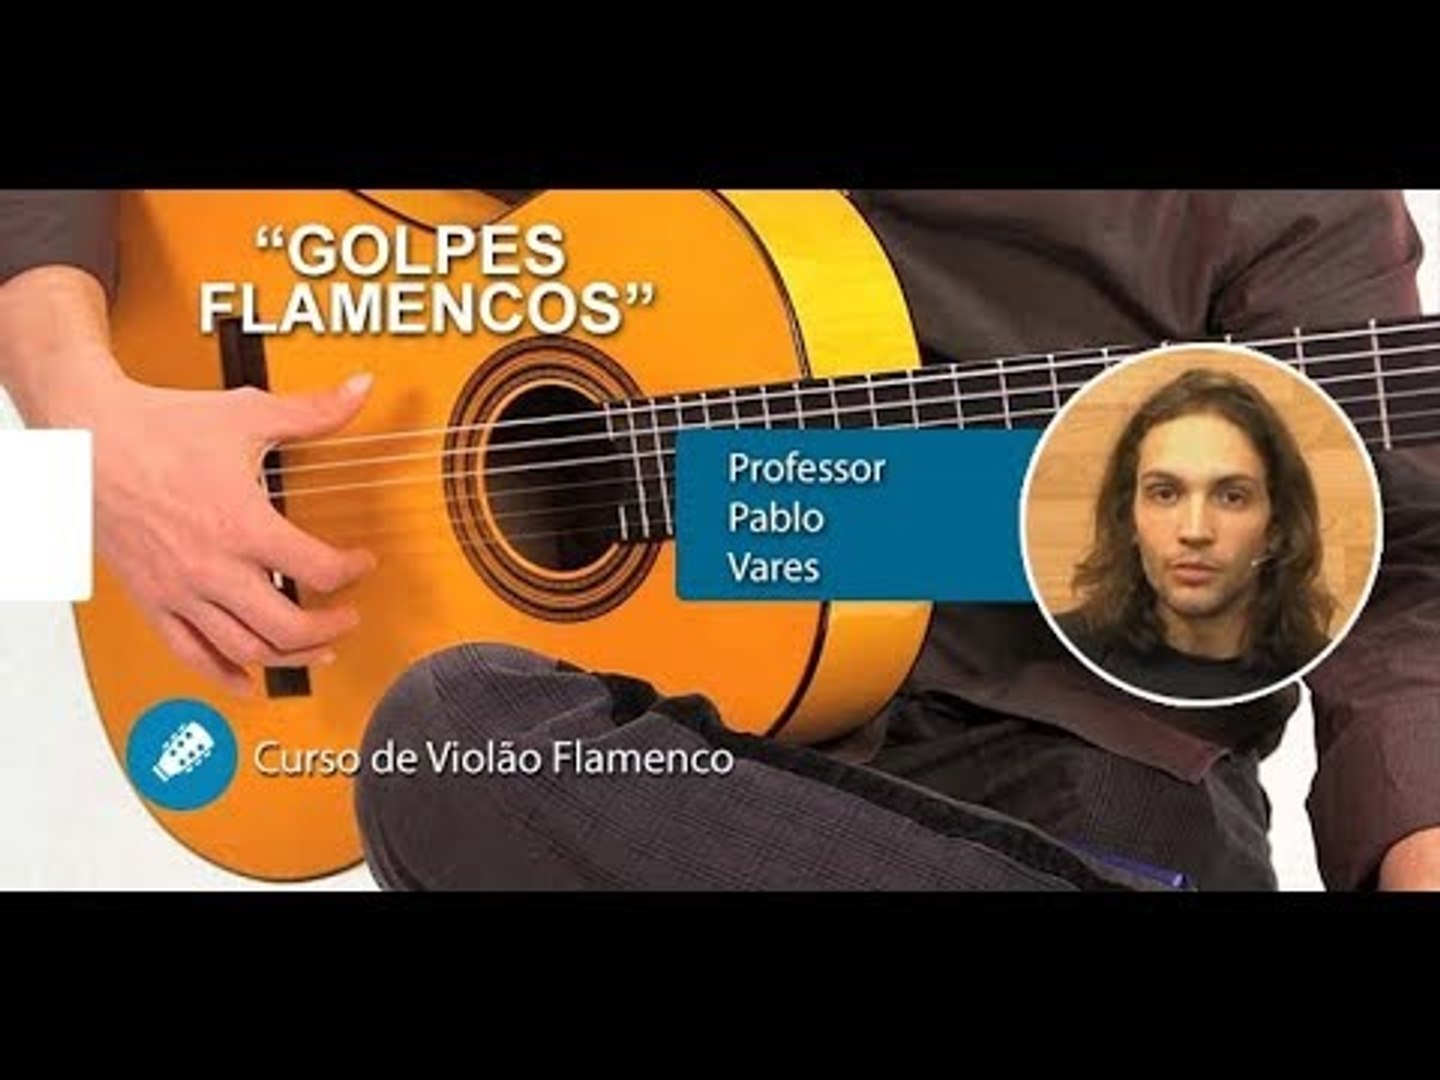 GOLPES FLAMENCOS - Aula de Violão Flamenco - Vídeo Dailymotion